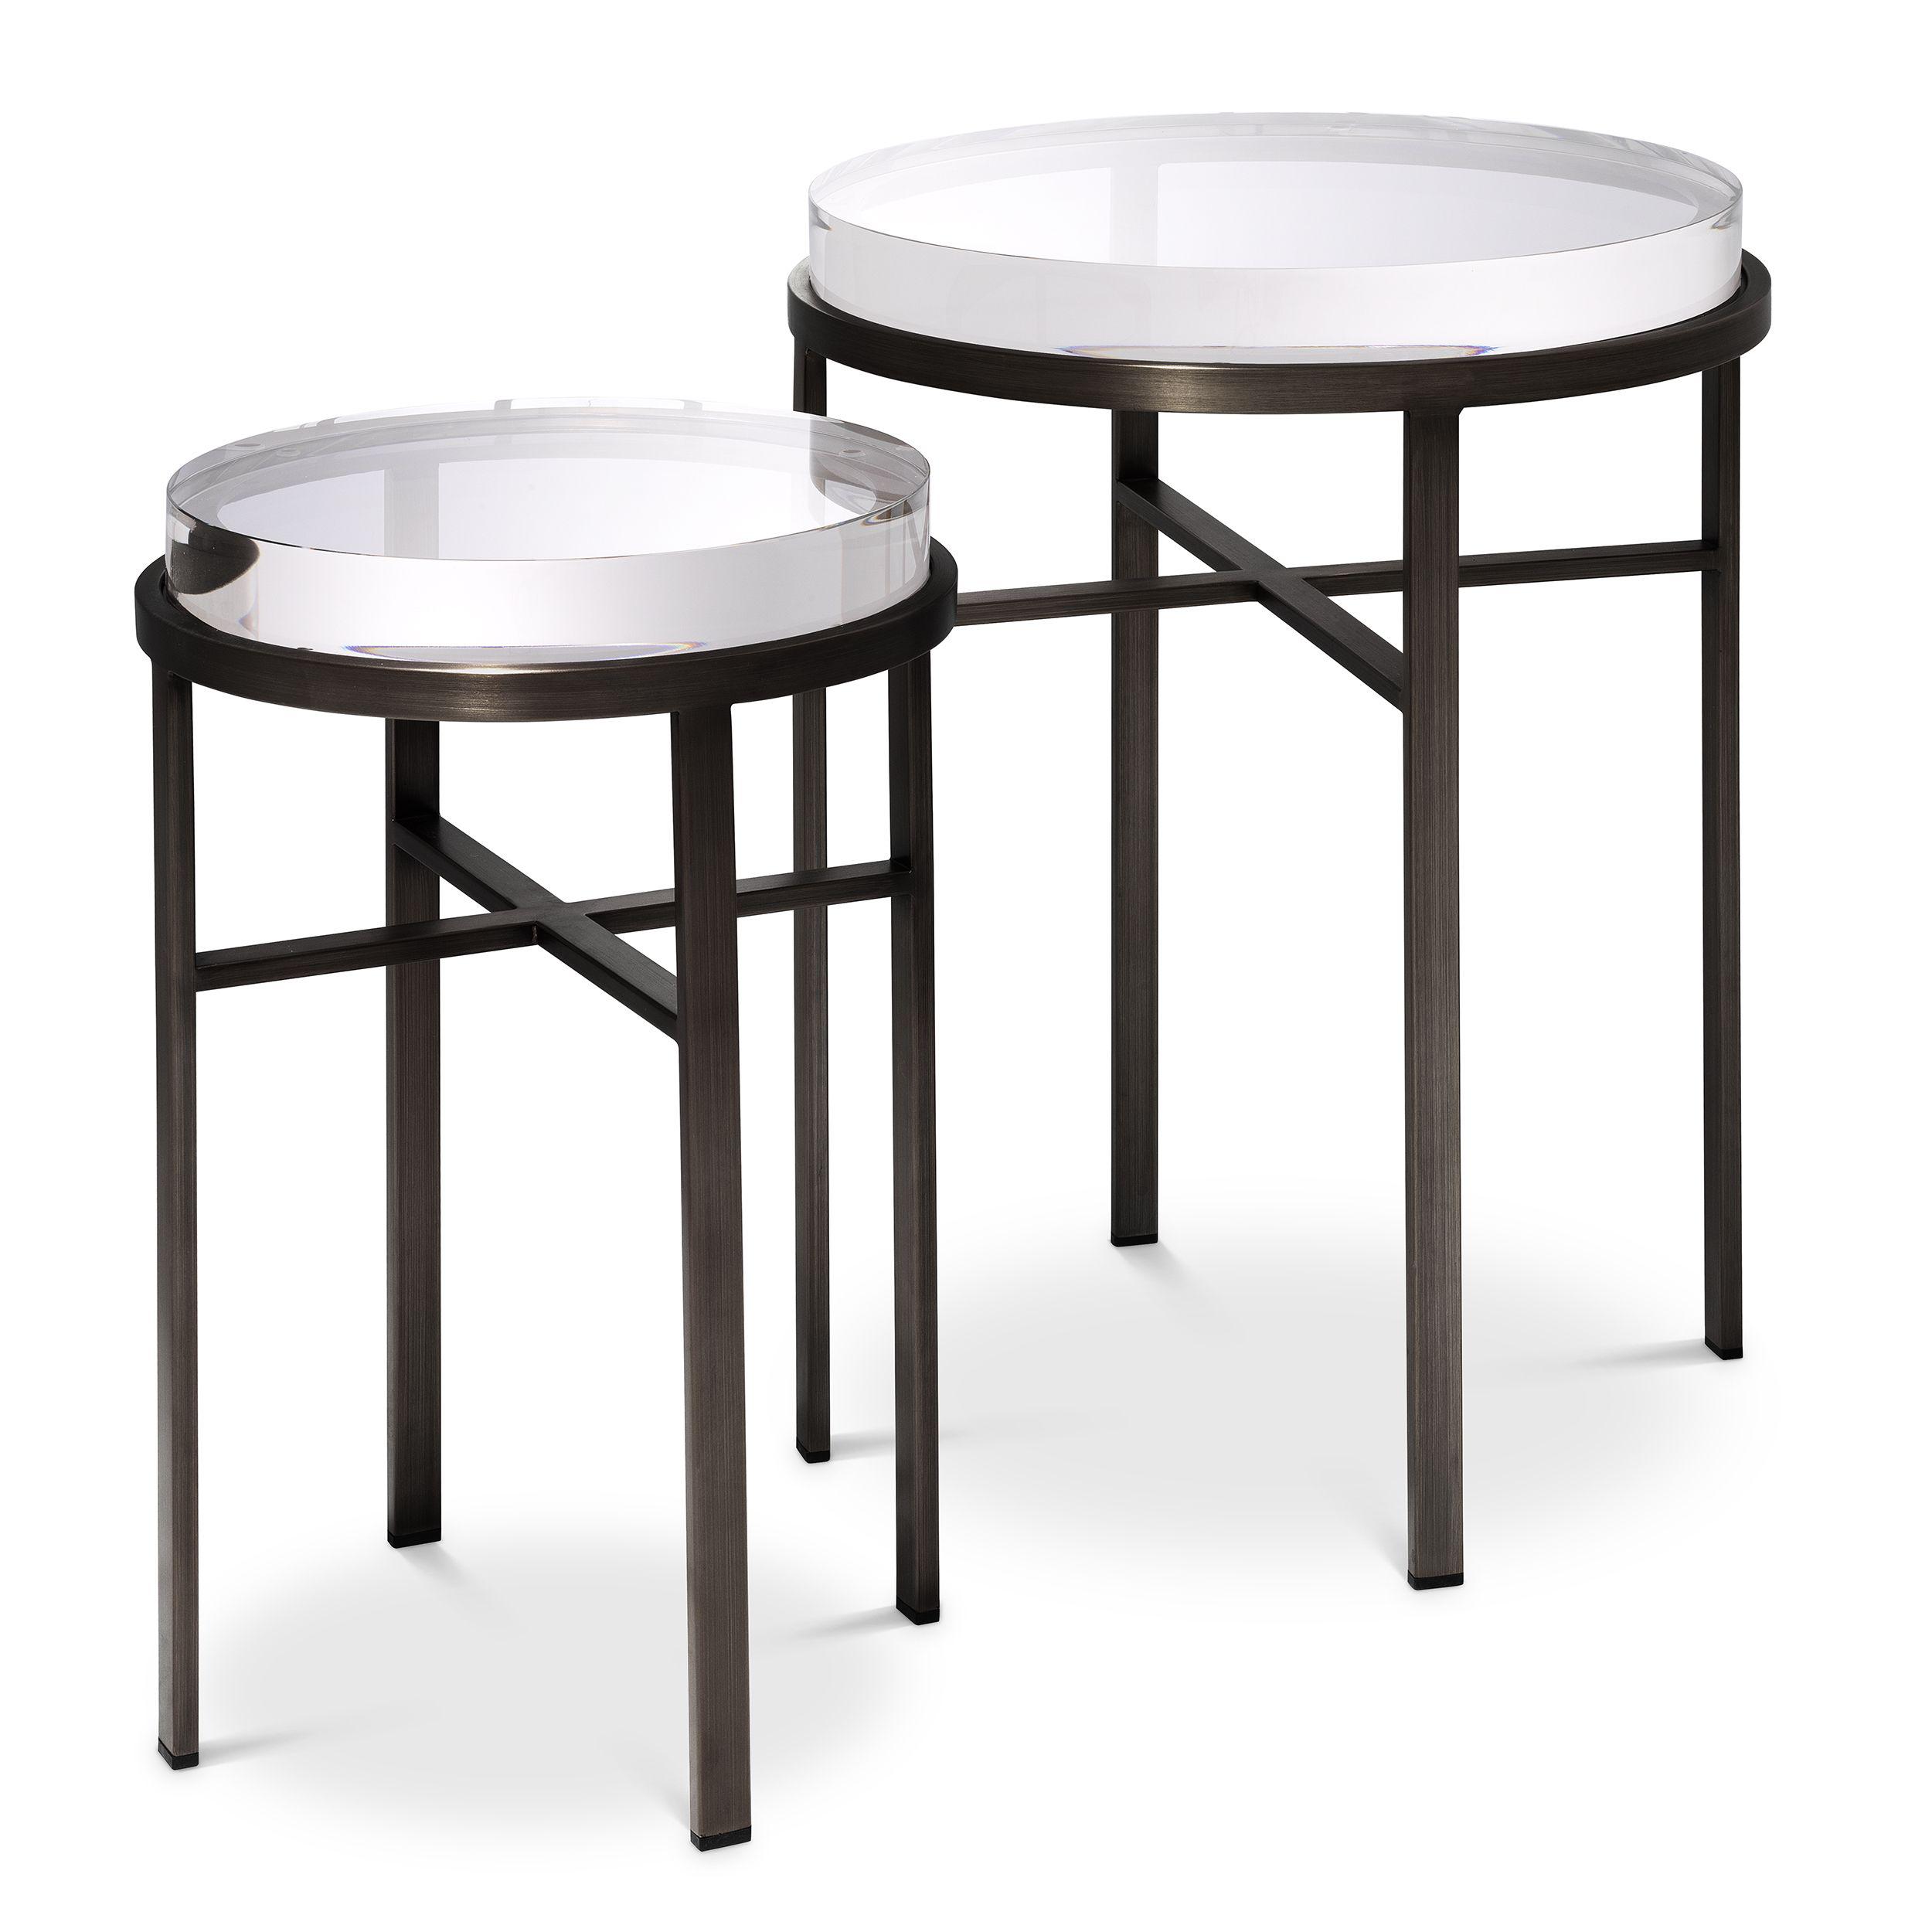 Купить Приставной столик Side Table Hoxton set of 2 в интернет-магазине roooms.ru